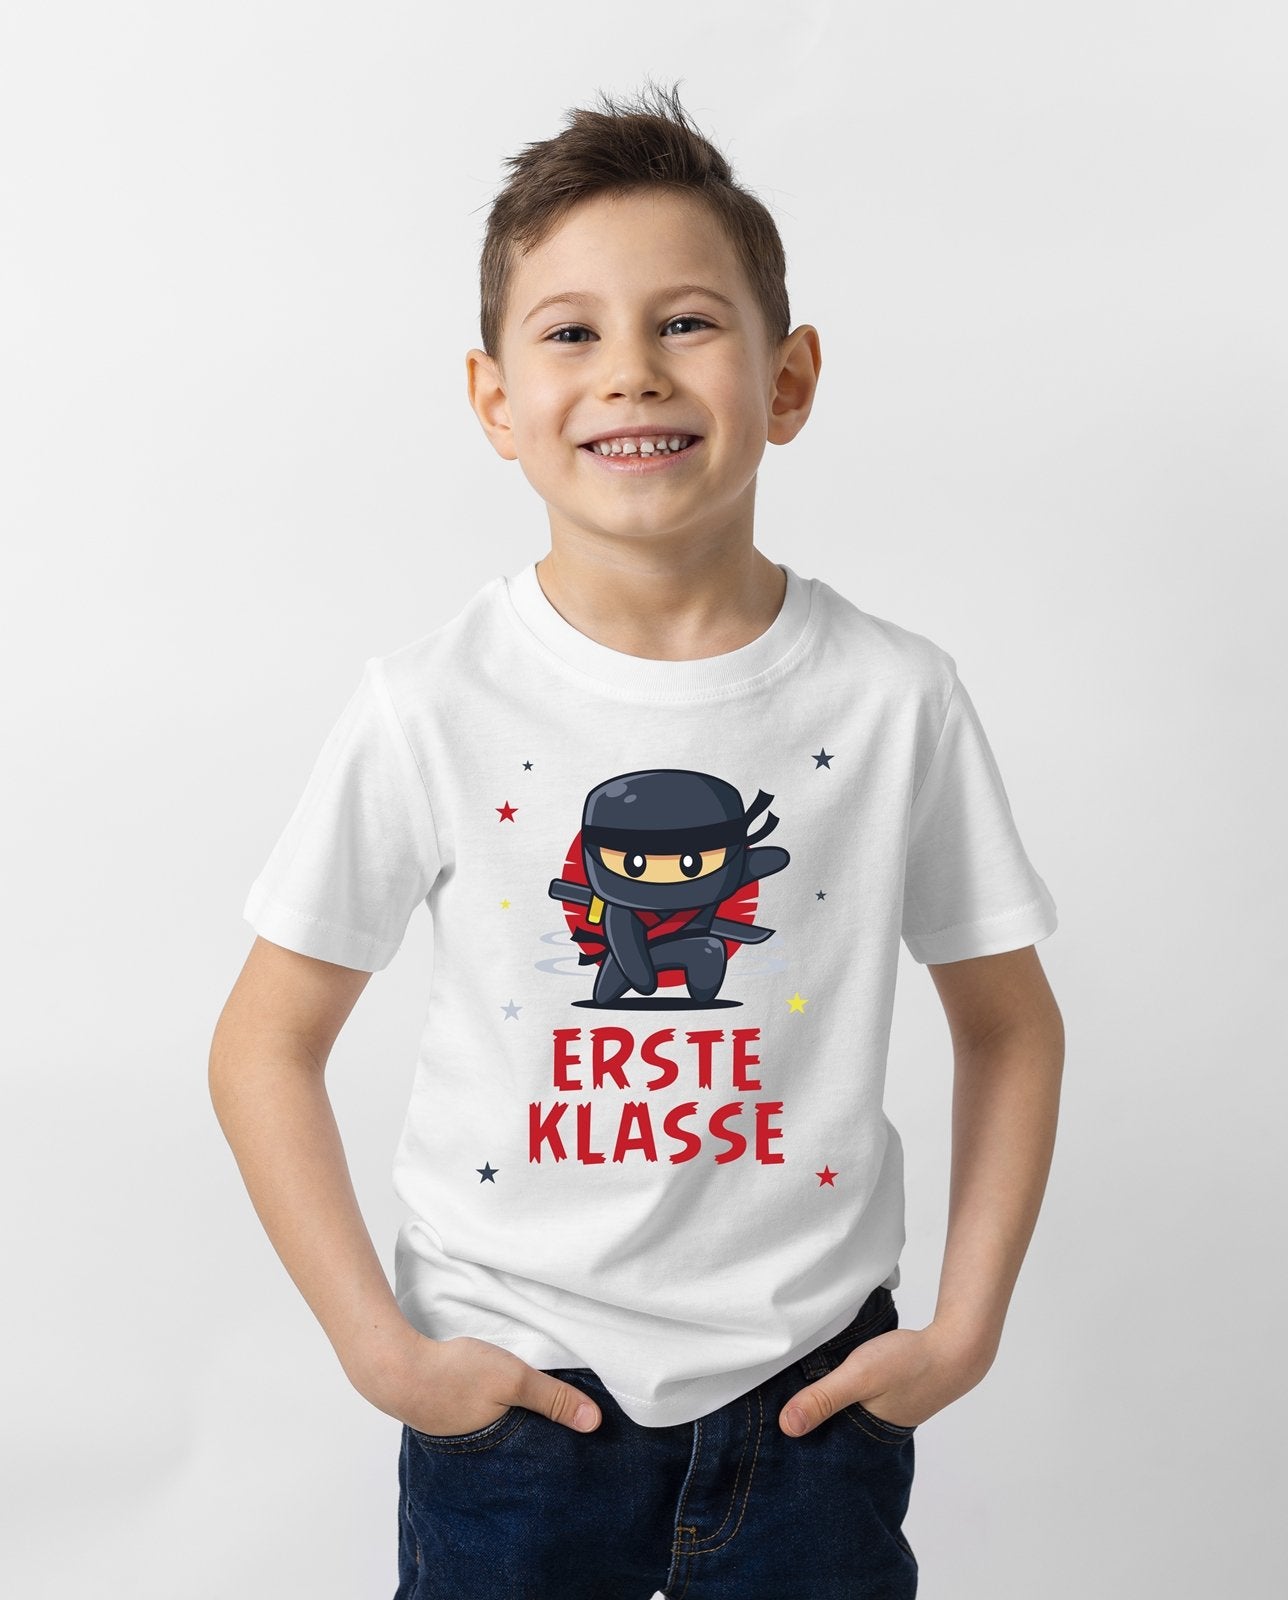 Bild: T-Shirt Kinder - Erste Klasse (Ninja) Geschenkidee